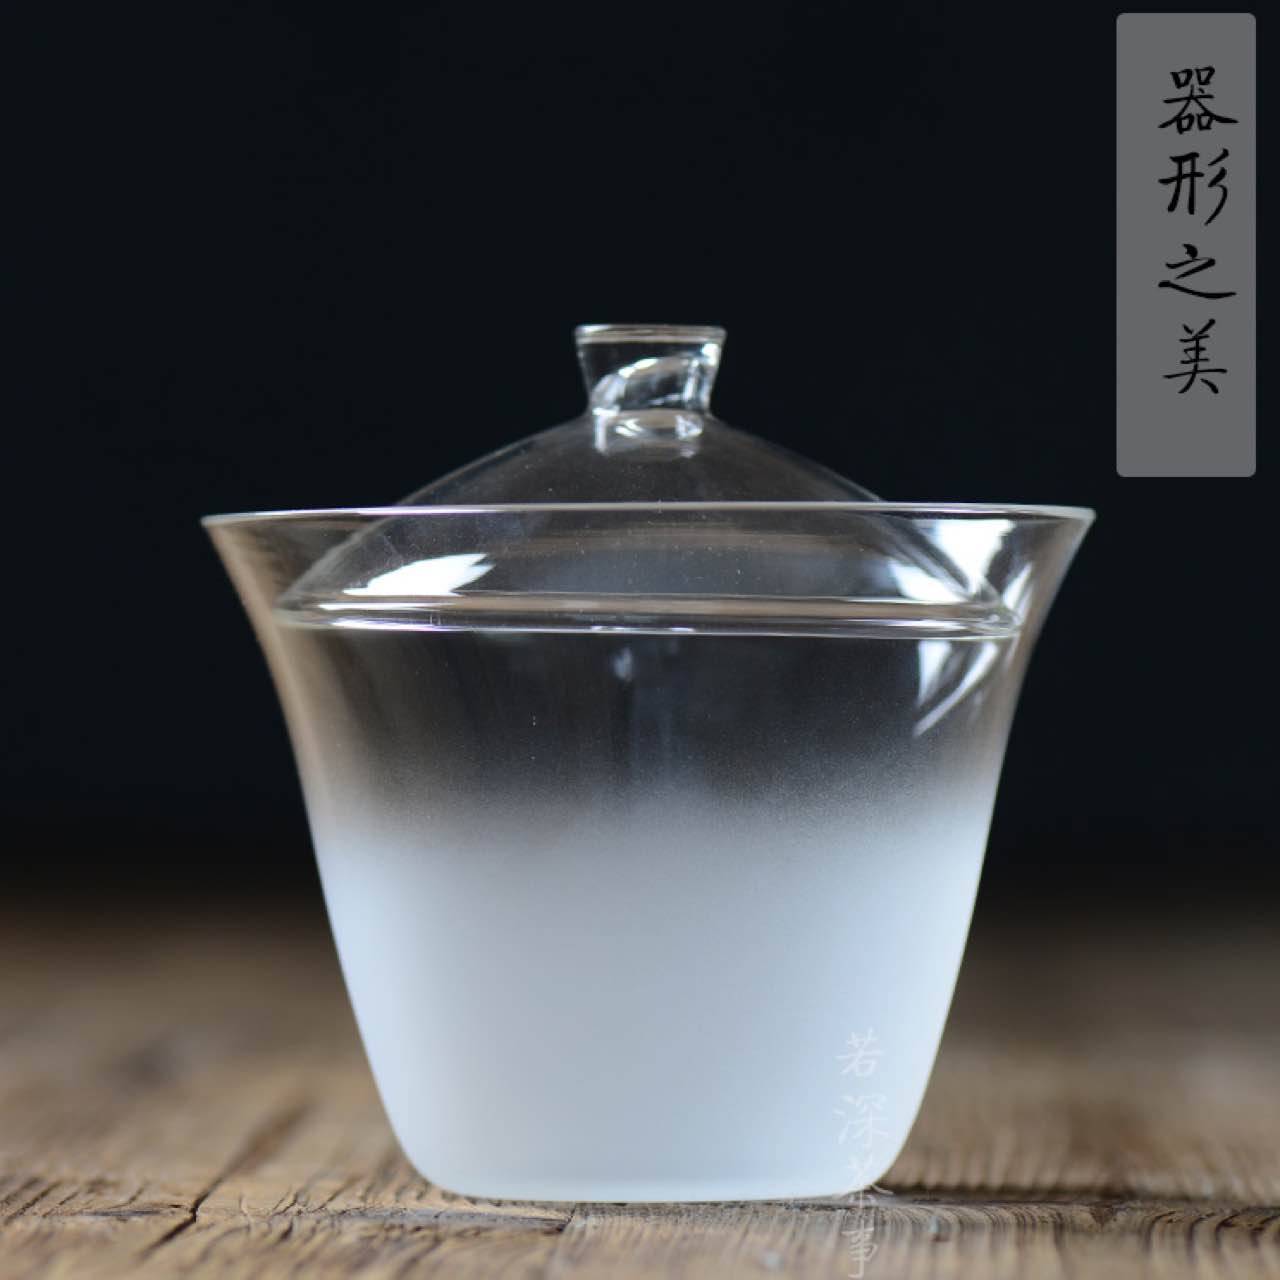 日式云雾玻璃盖碗 玻璃茶具套装雾化磨砂玻璃公道杯泡茶碗 若深